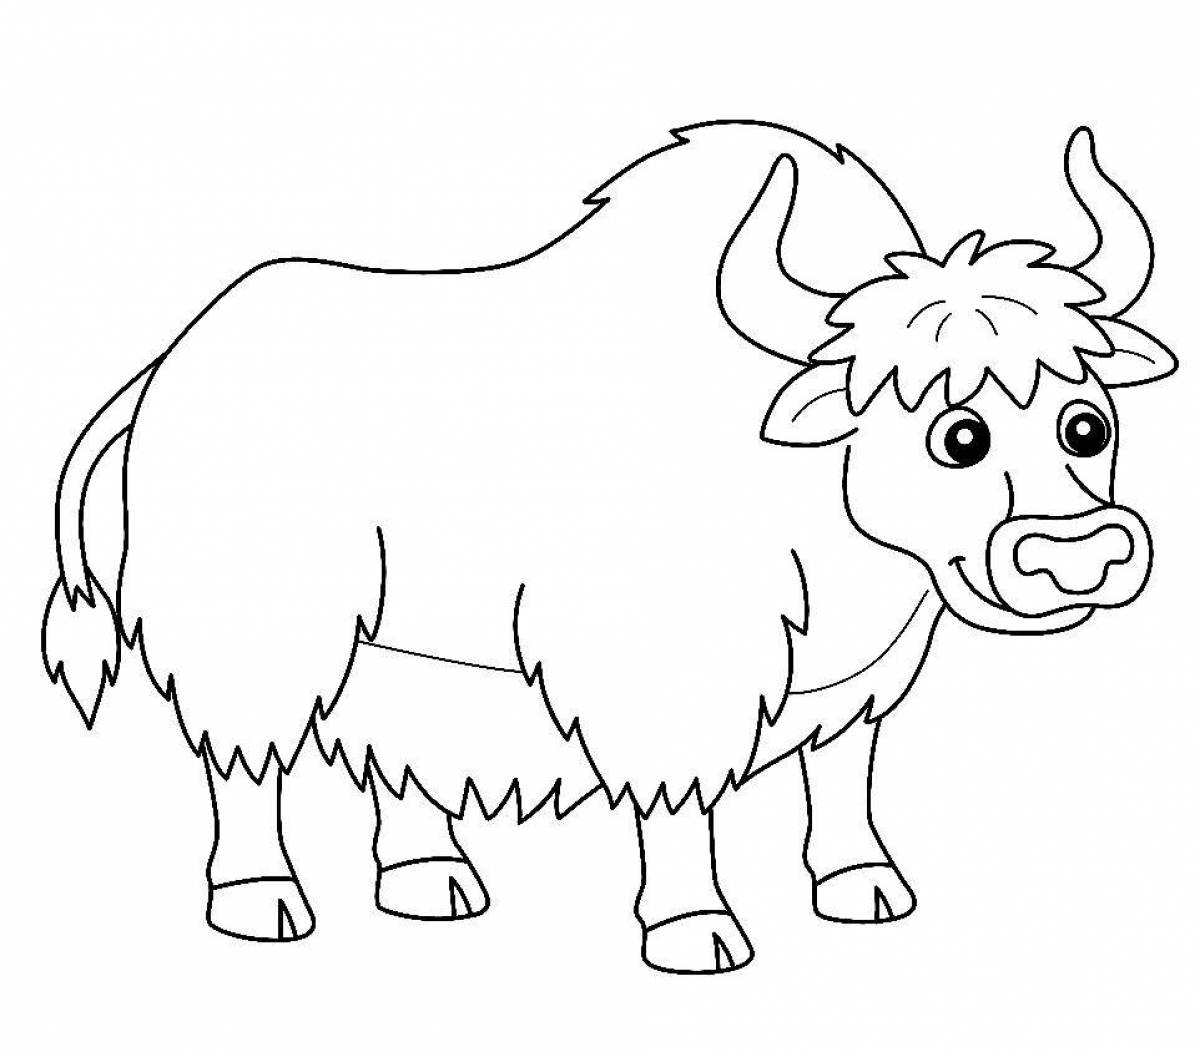 Incredible yak coloring book for kids